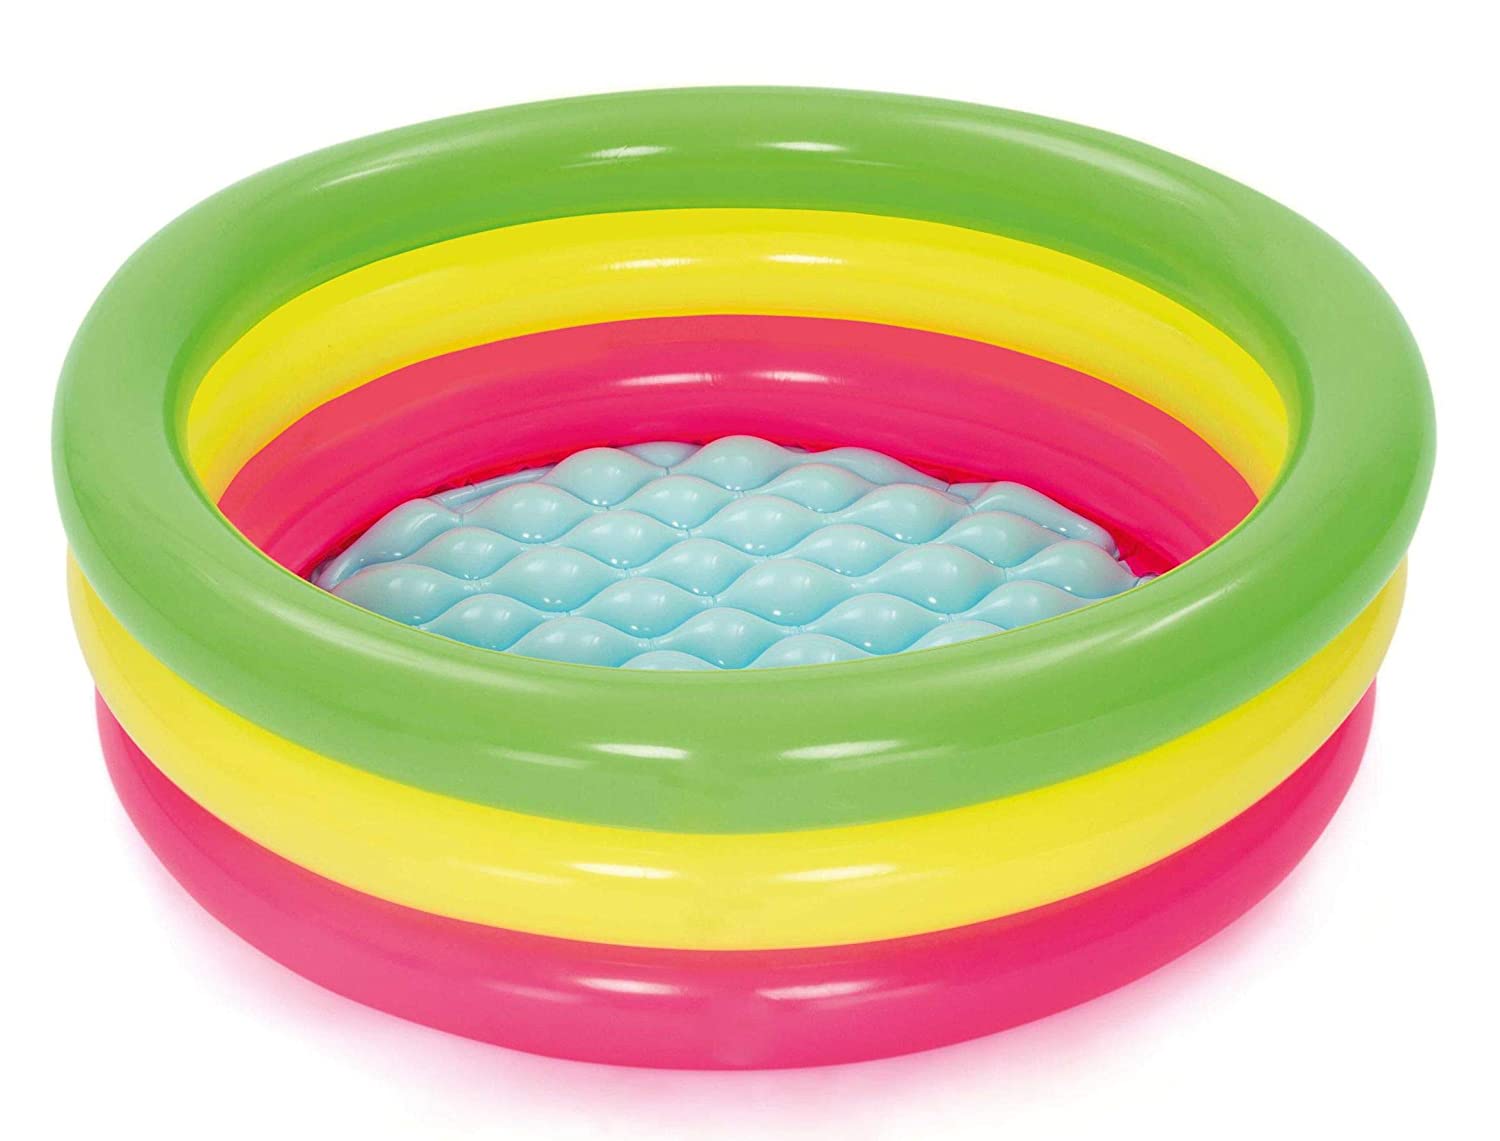 Bestway Inflatable Kiddie Swimming Pool